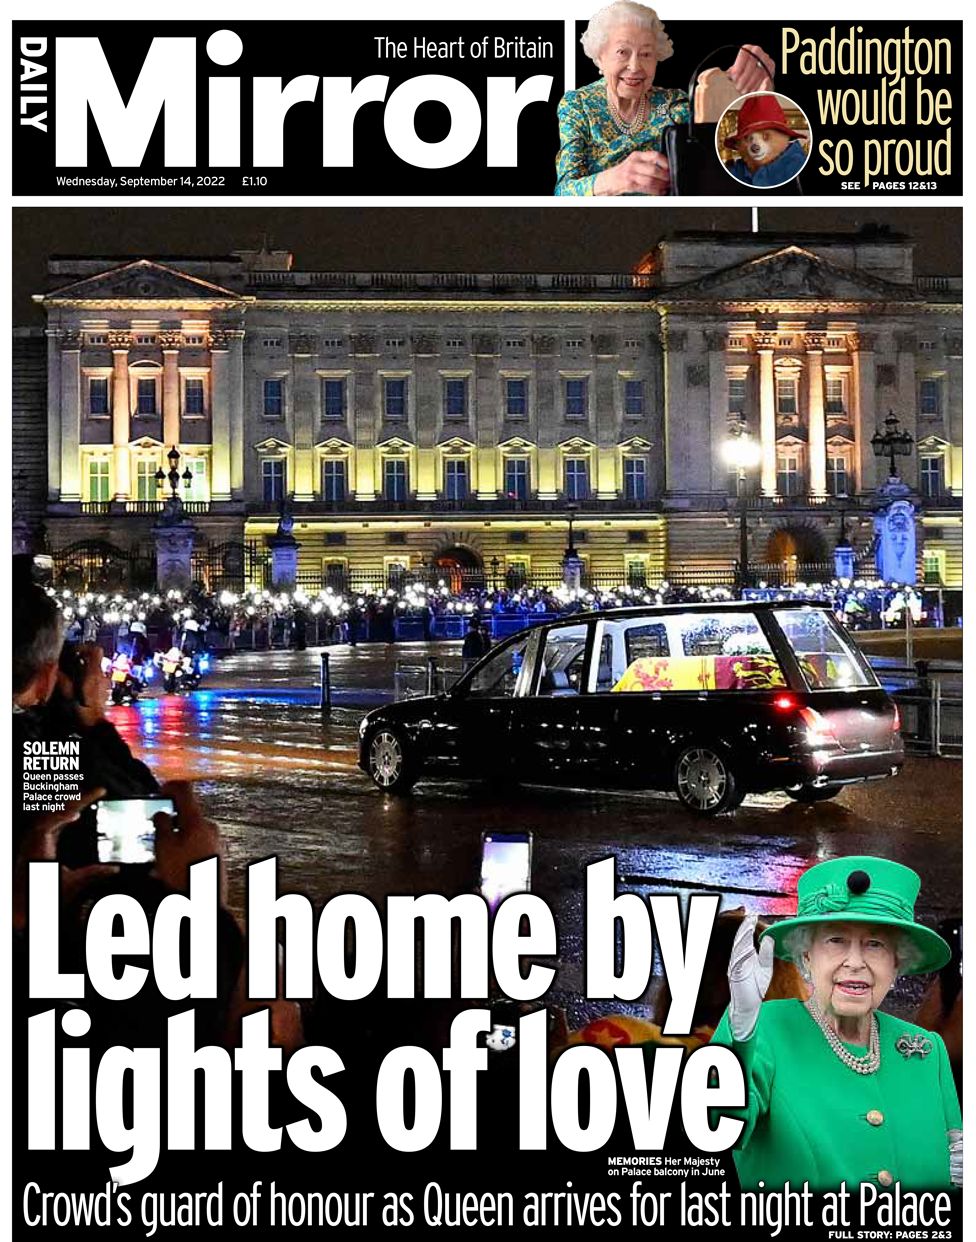 O Daily Mirror jornais britânicos morte rainha Elizabeth cortejo Londres Reino Unido 